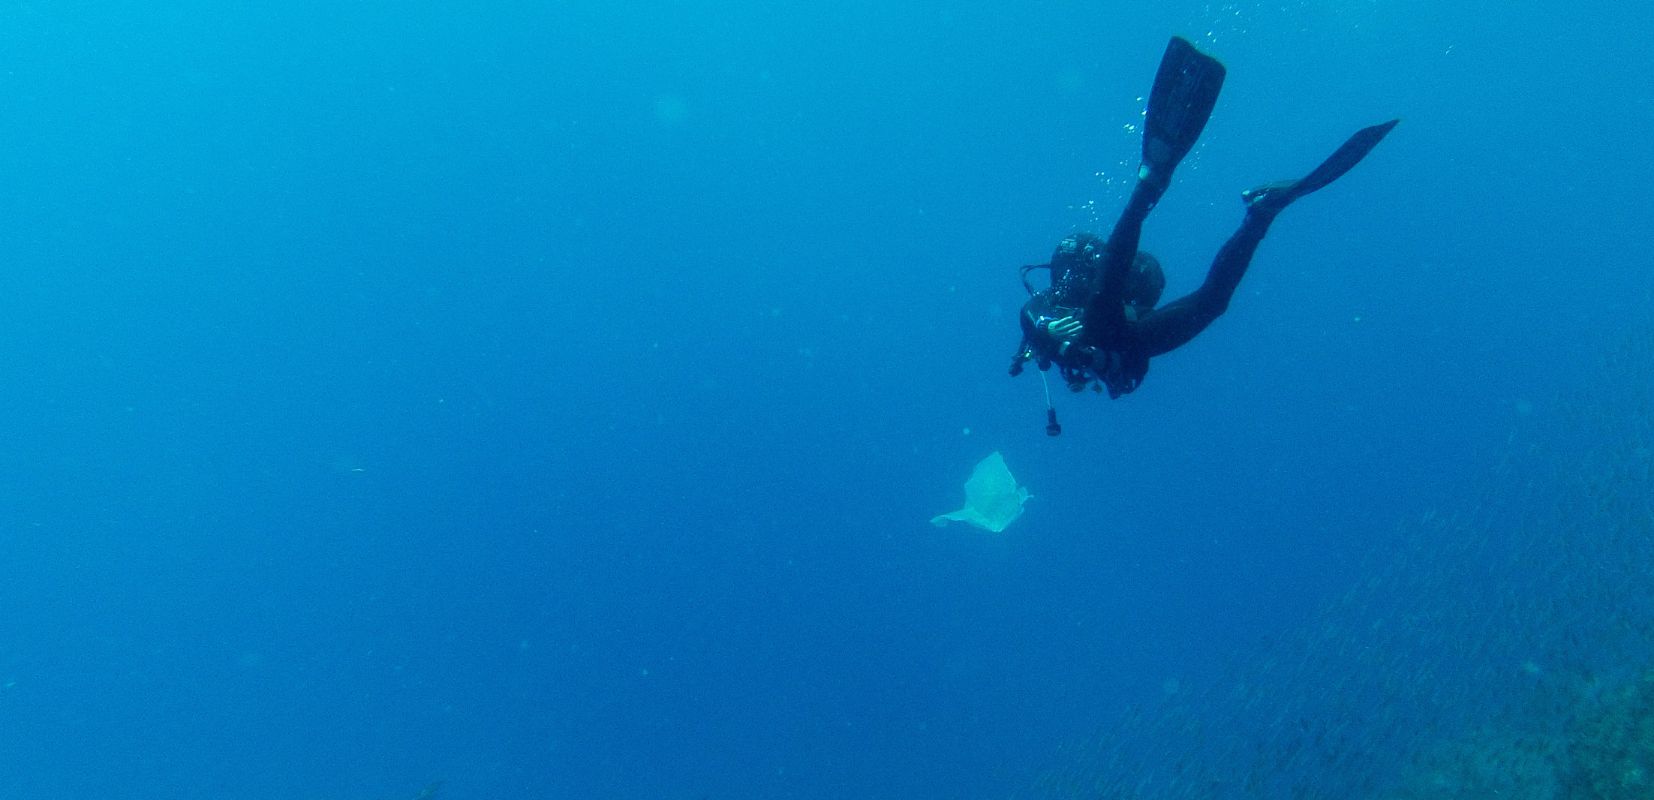 3 Un buceador recoge una bolsa de plástico durante una inmersión en el océano Atlántico Gustavo Muñoz Soriano